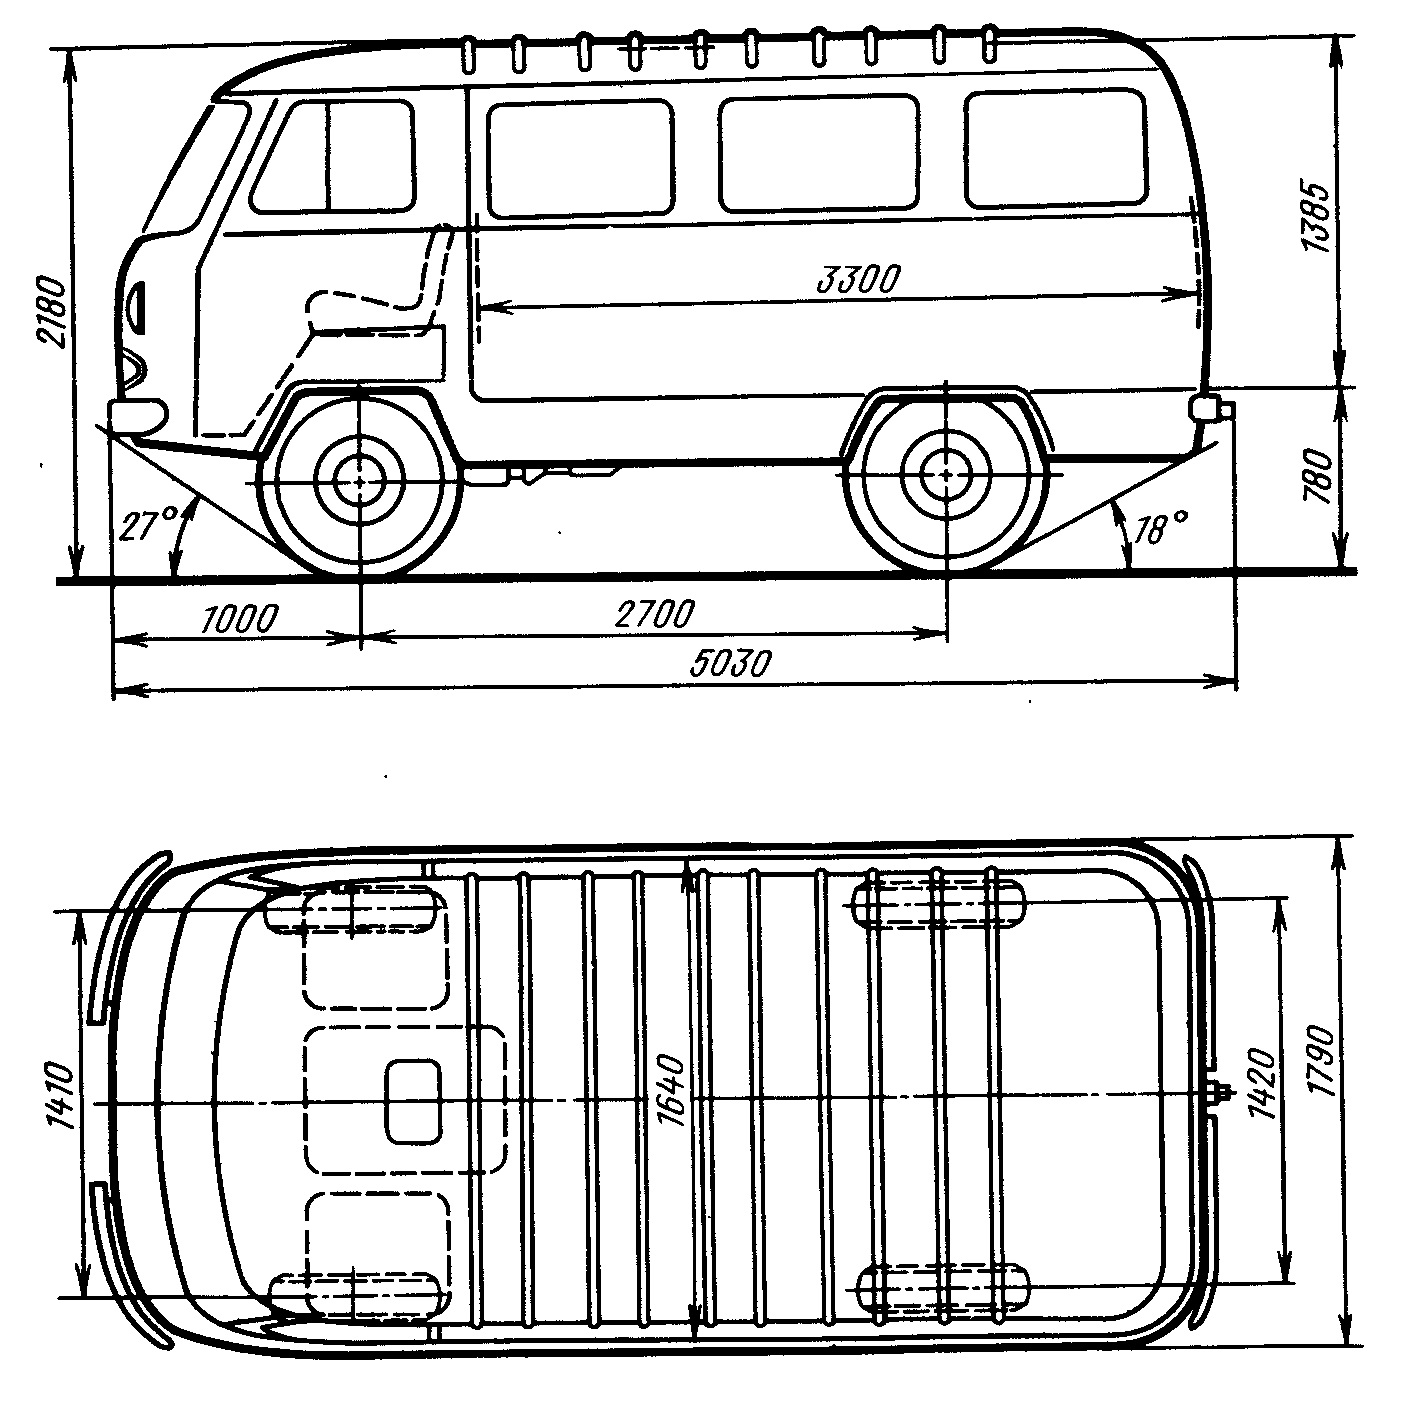 Раф размеры. РАФ 2203 габариты. Автомобиль РАФ 2203 чертеж. РАФ-2203 микроавтобус чертеж. РАФ-2203 микроавтобус габариты.